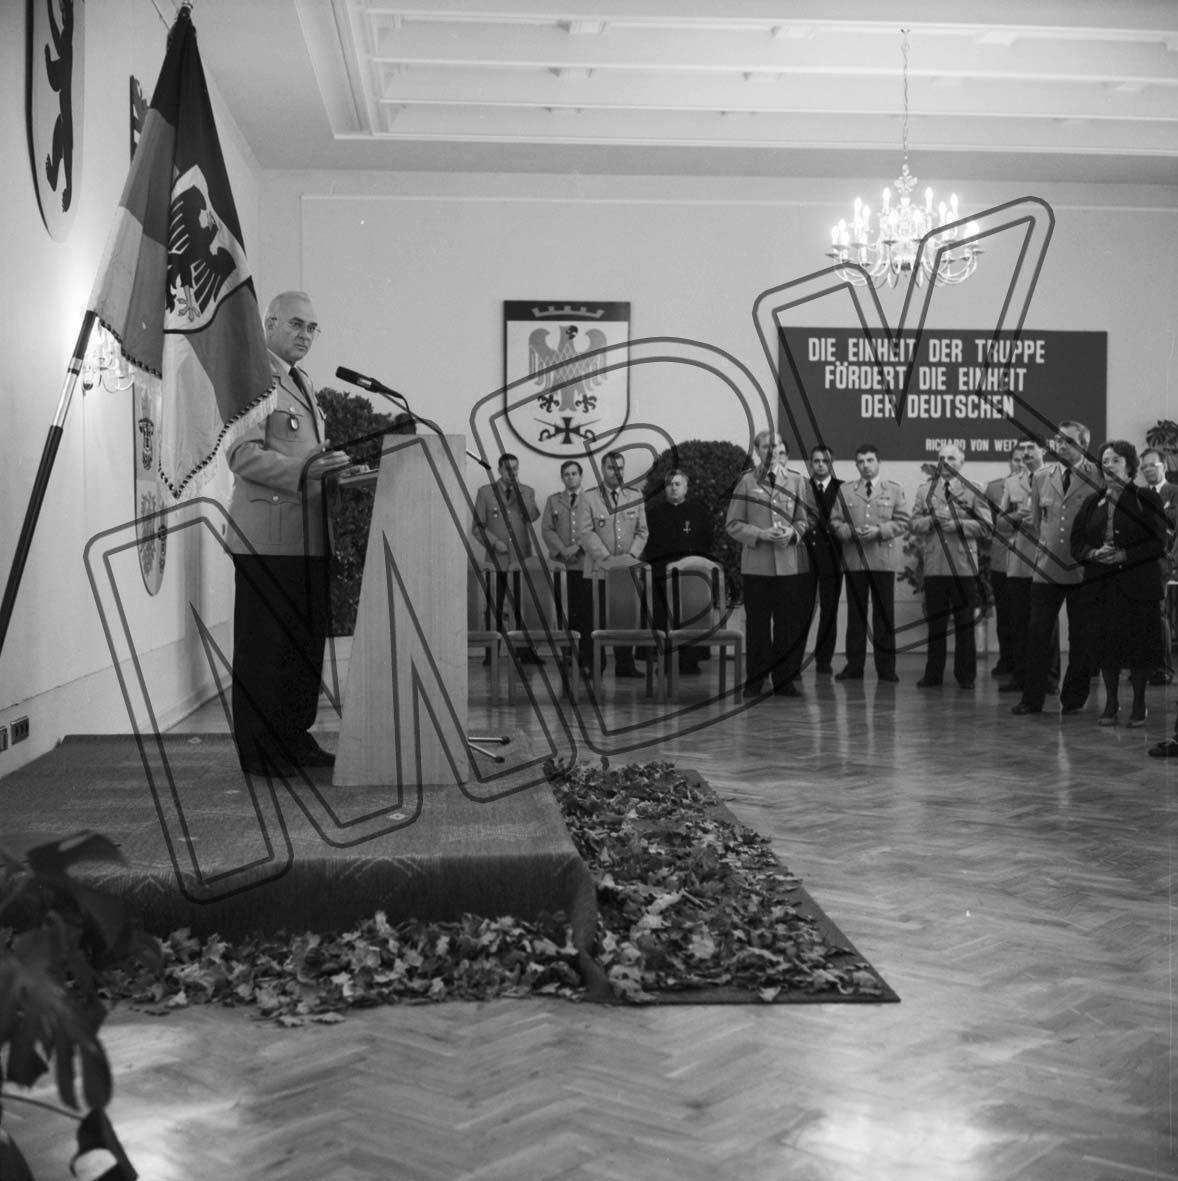 Fotografie: Jahresempfang des Kommandierenden Generals des Territorialkommandos Ost, Geltow bei Potsdam, 1993 (Museum Berlin-Karlshorst RR-P)